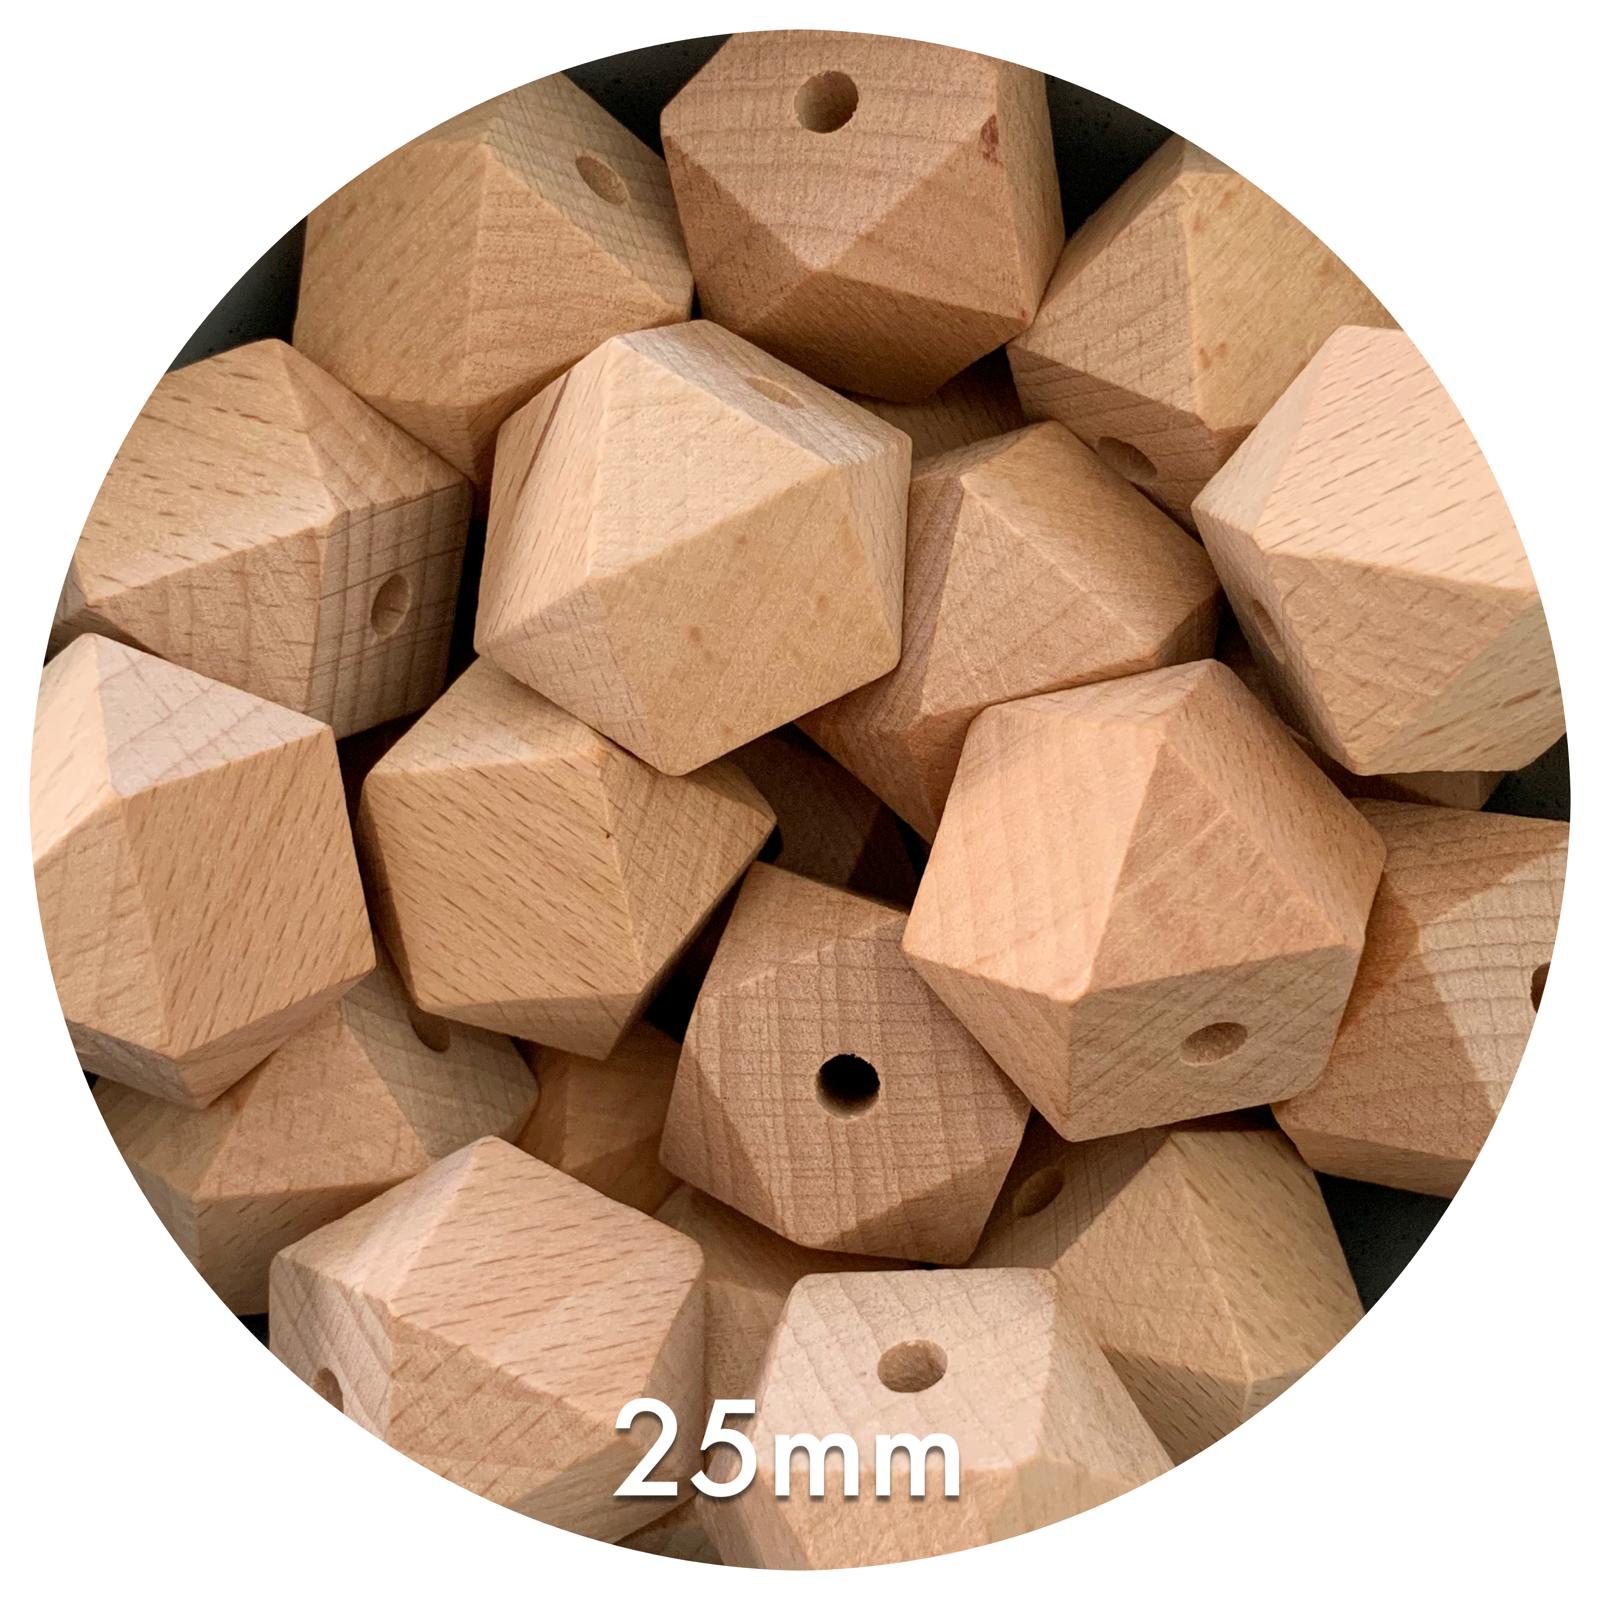 Beech Wood Hexagon Beads - 25mm - 5 Beads